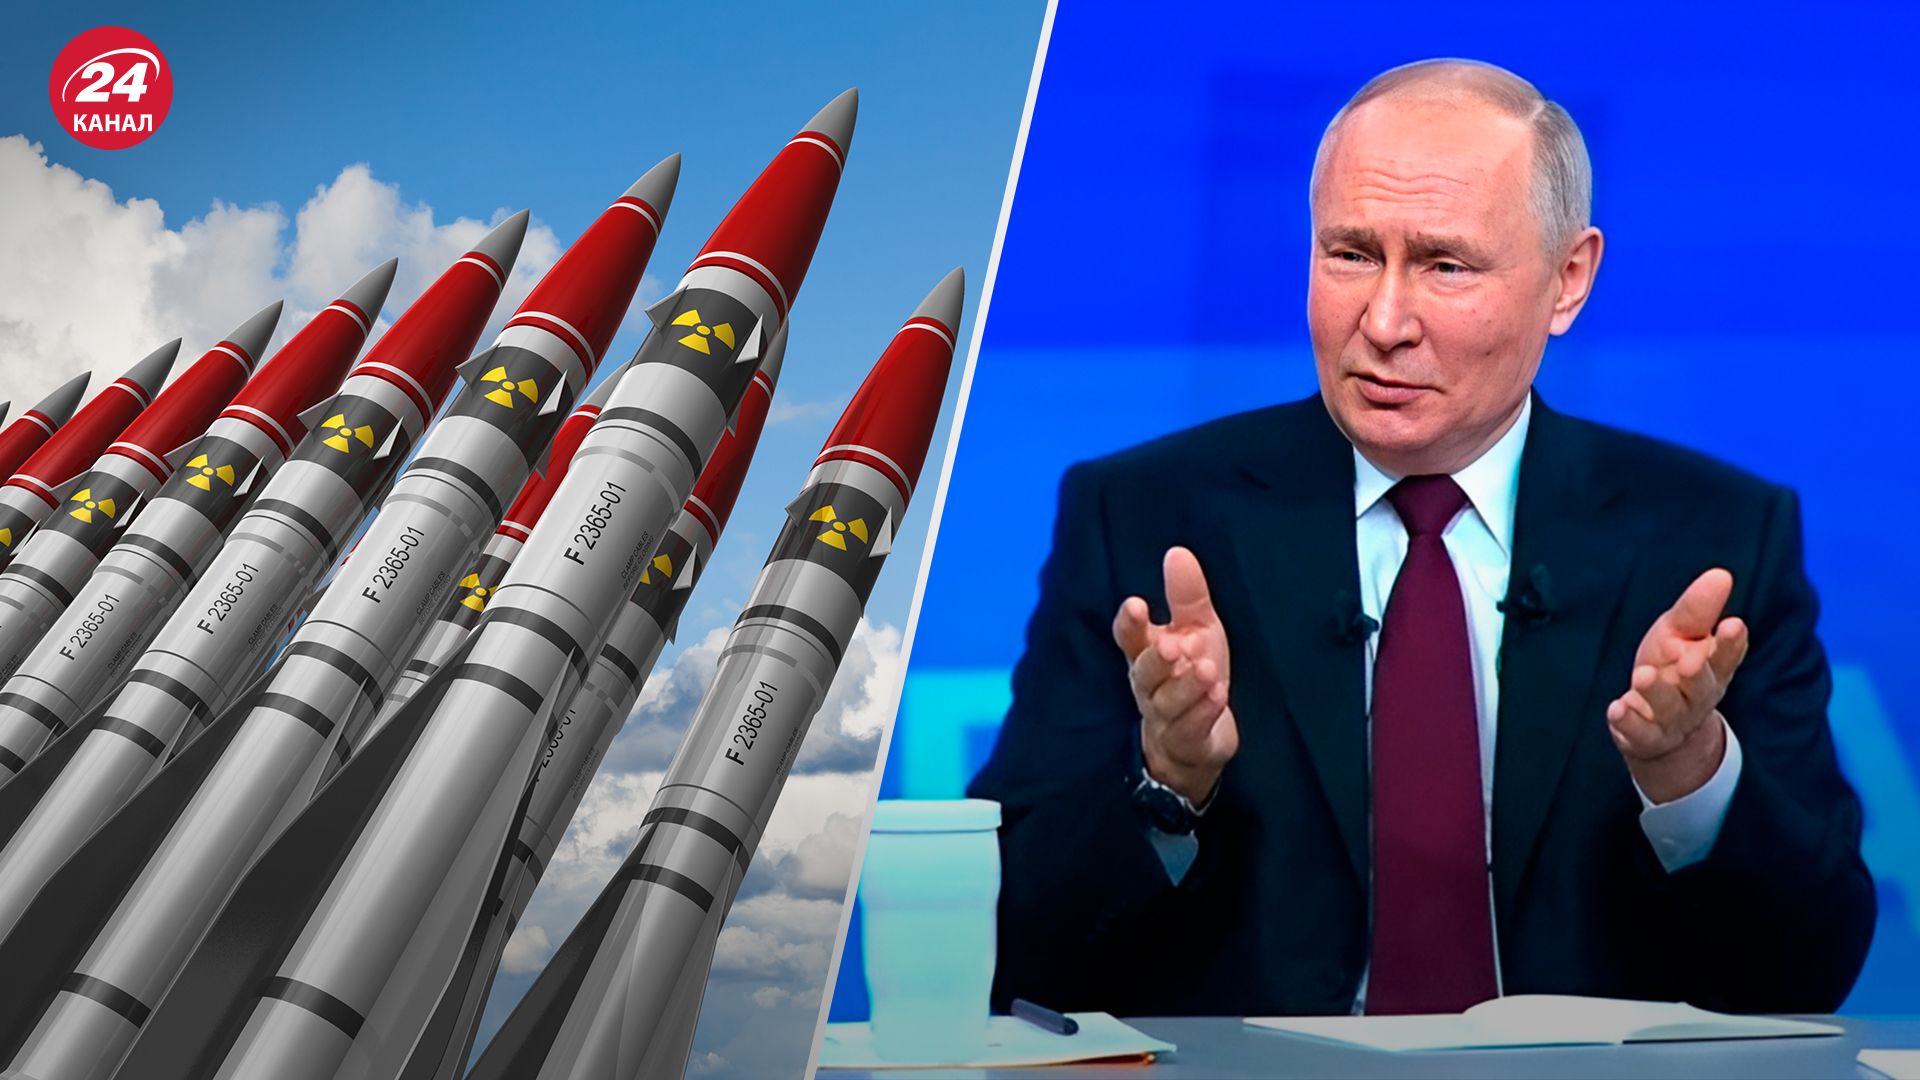 Сколько ядерных боеголовок имеет Россия